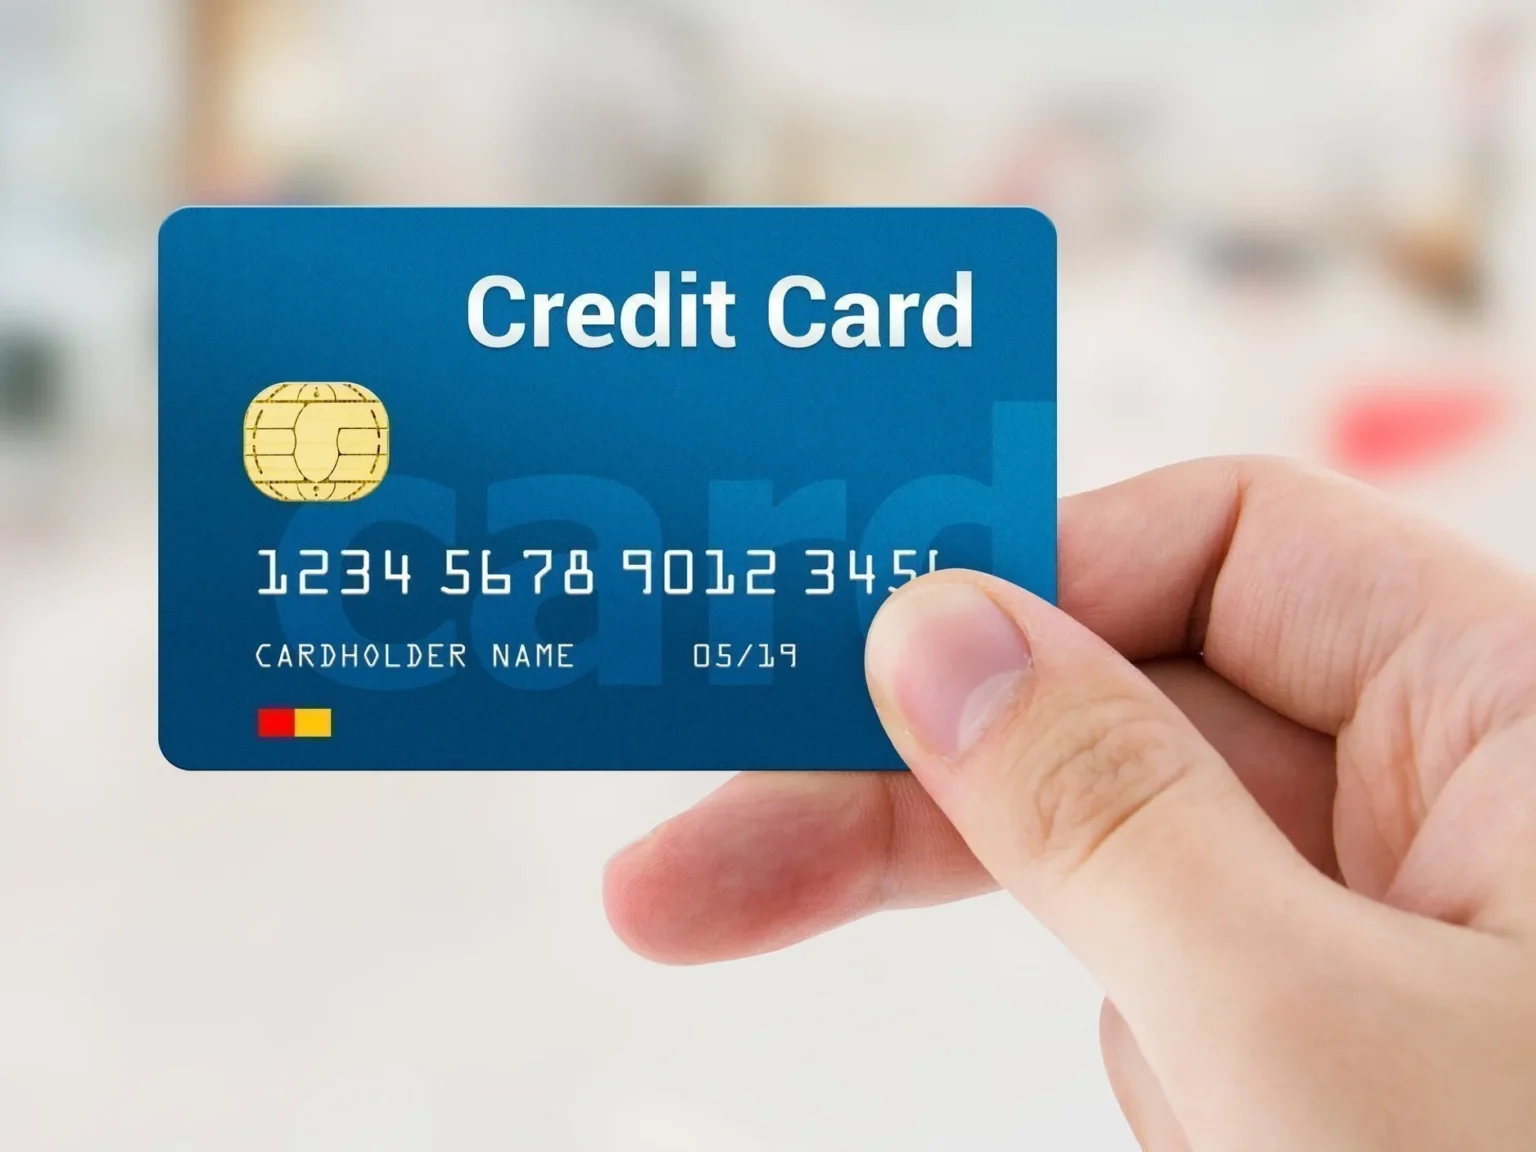 Credit Card Rewards Points के बारे में जाने 10 मुख्य बातें !